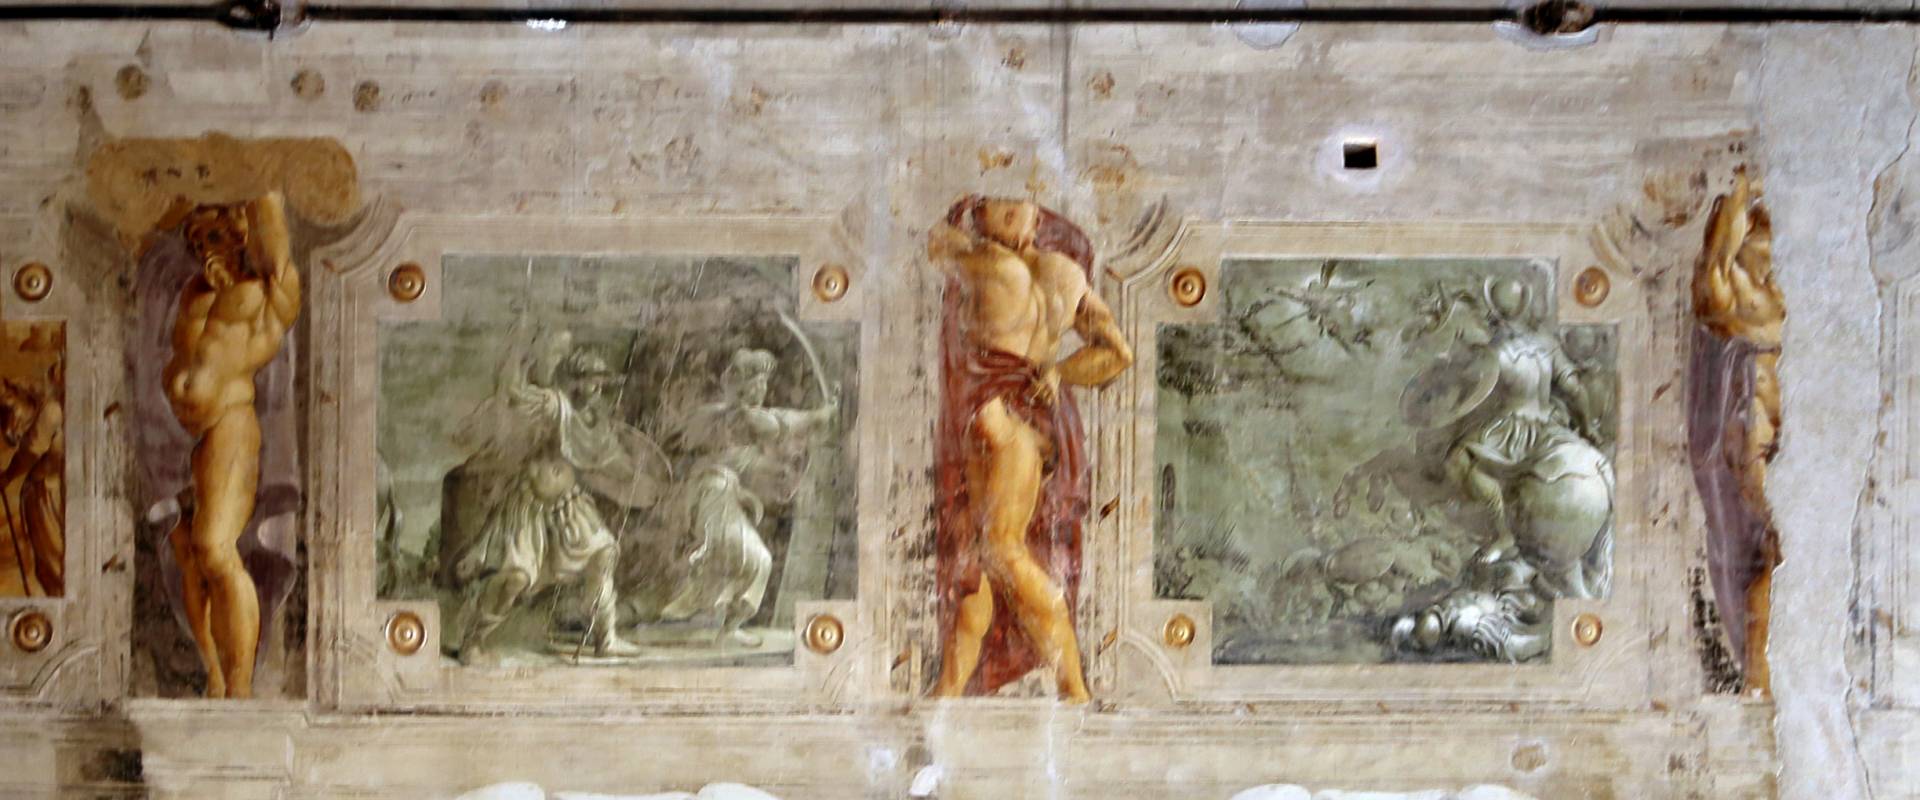 Pier francesco battistelli e aiuti, affreschi con scene dell'orlando furioso e della gerusalemme l. tra telamoni, 1619-28, 13 photo by Sailko